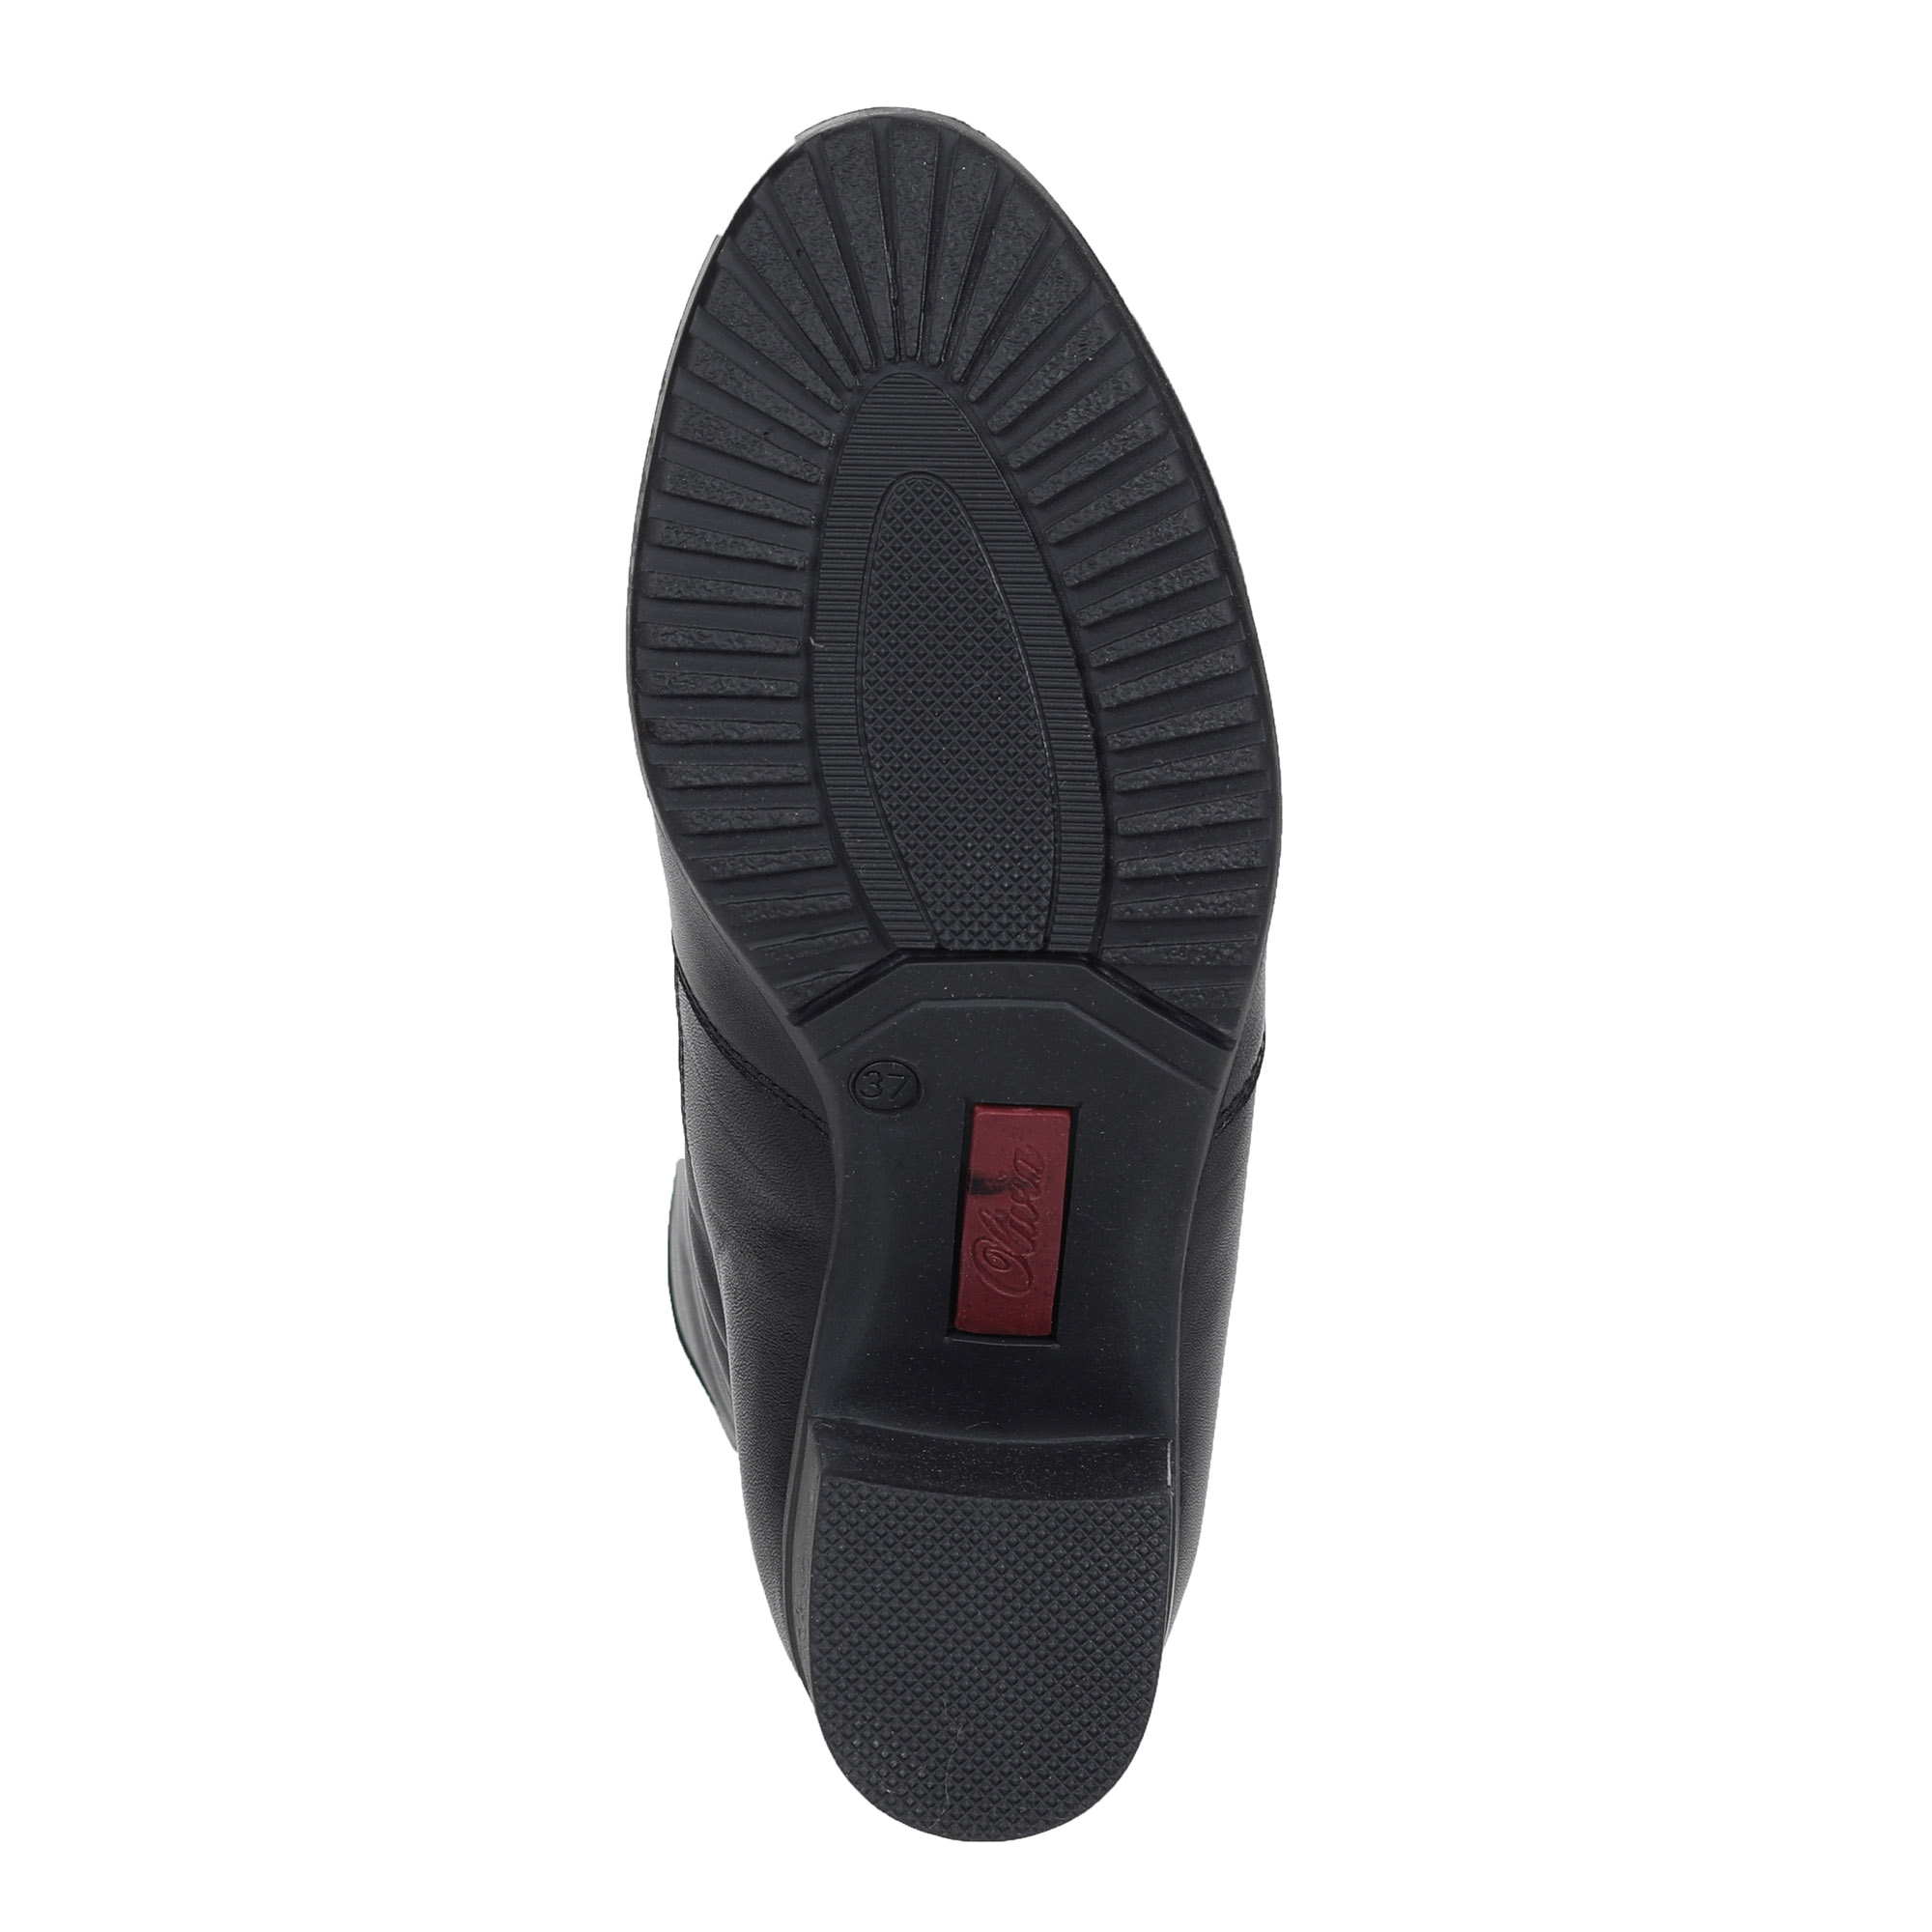 Черные сапоги из кожи на подкладке из натурального меха на устойчивом каблуке Olivia, размер 41, цвет черный - фото 7